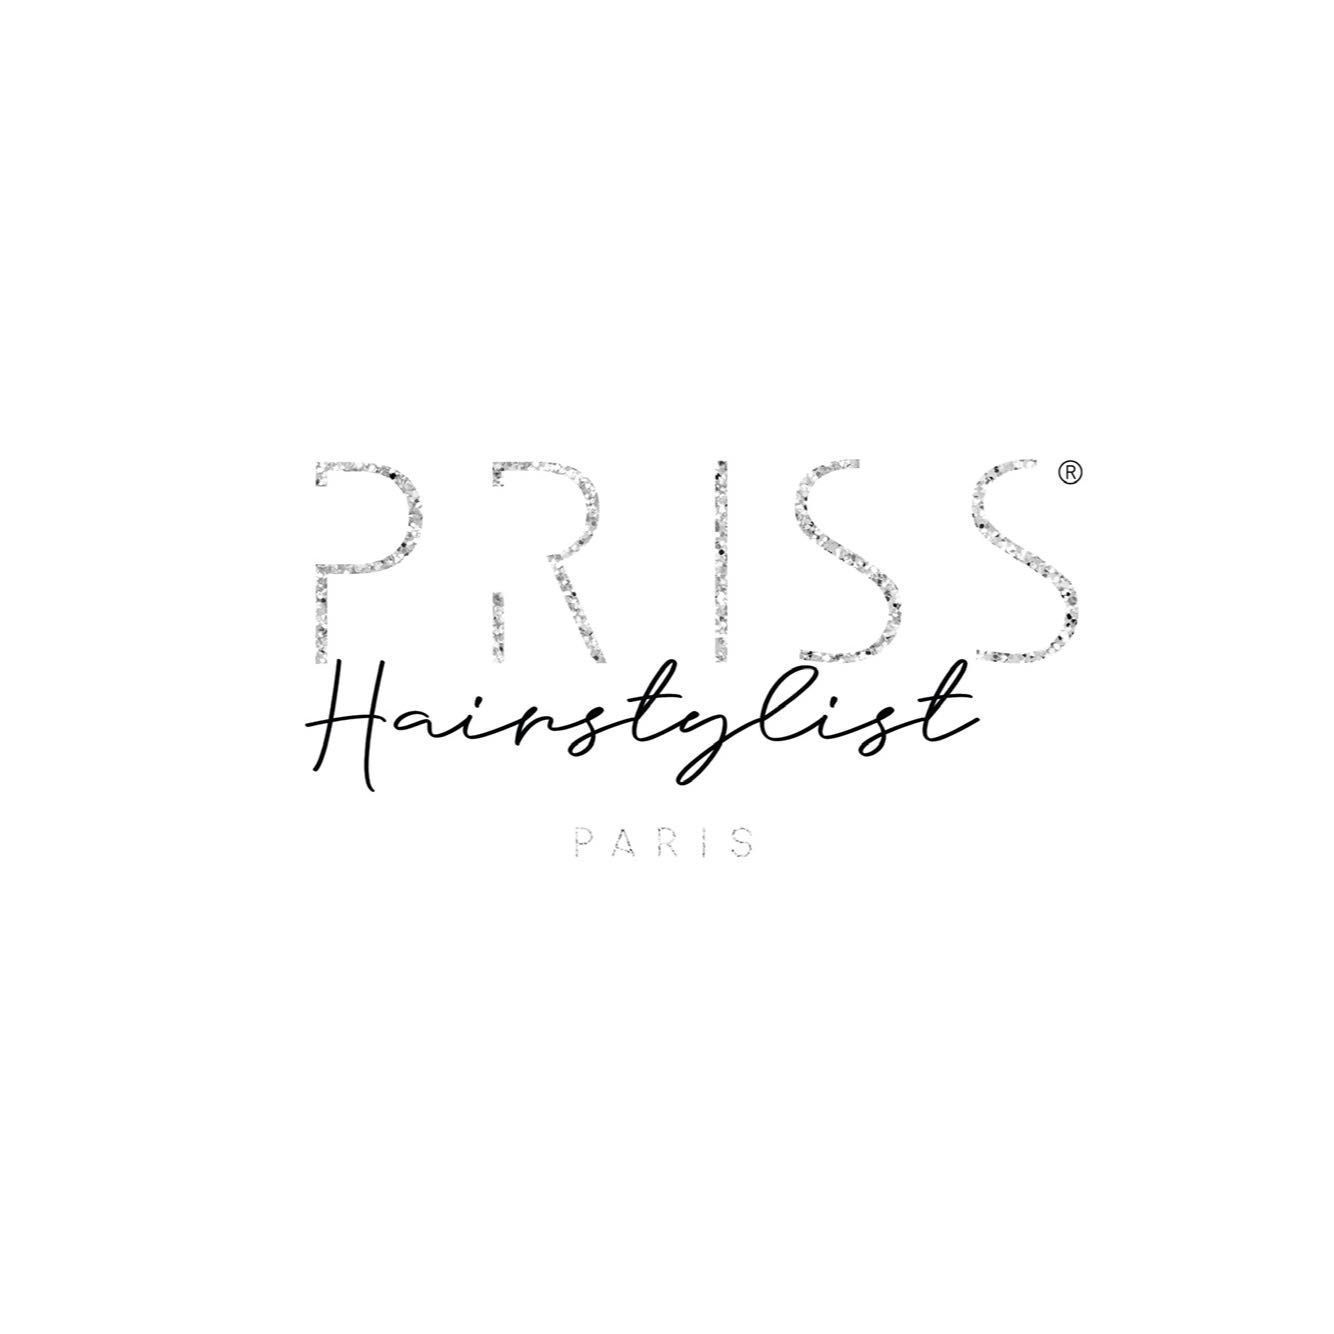 PRISS.HAIRSTYLIST, 95 rue lemercier, 75017, Paris, Paris 17ème